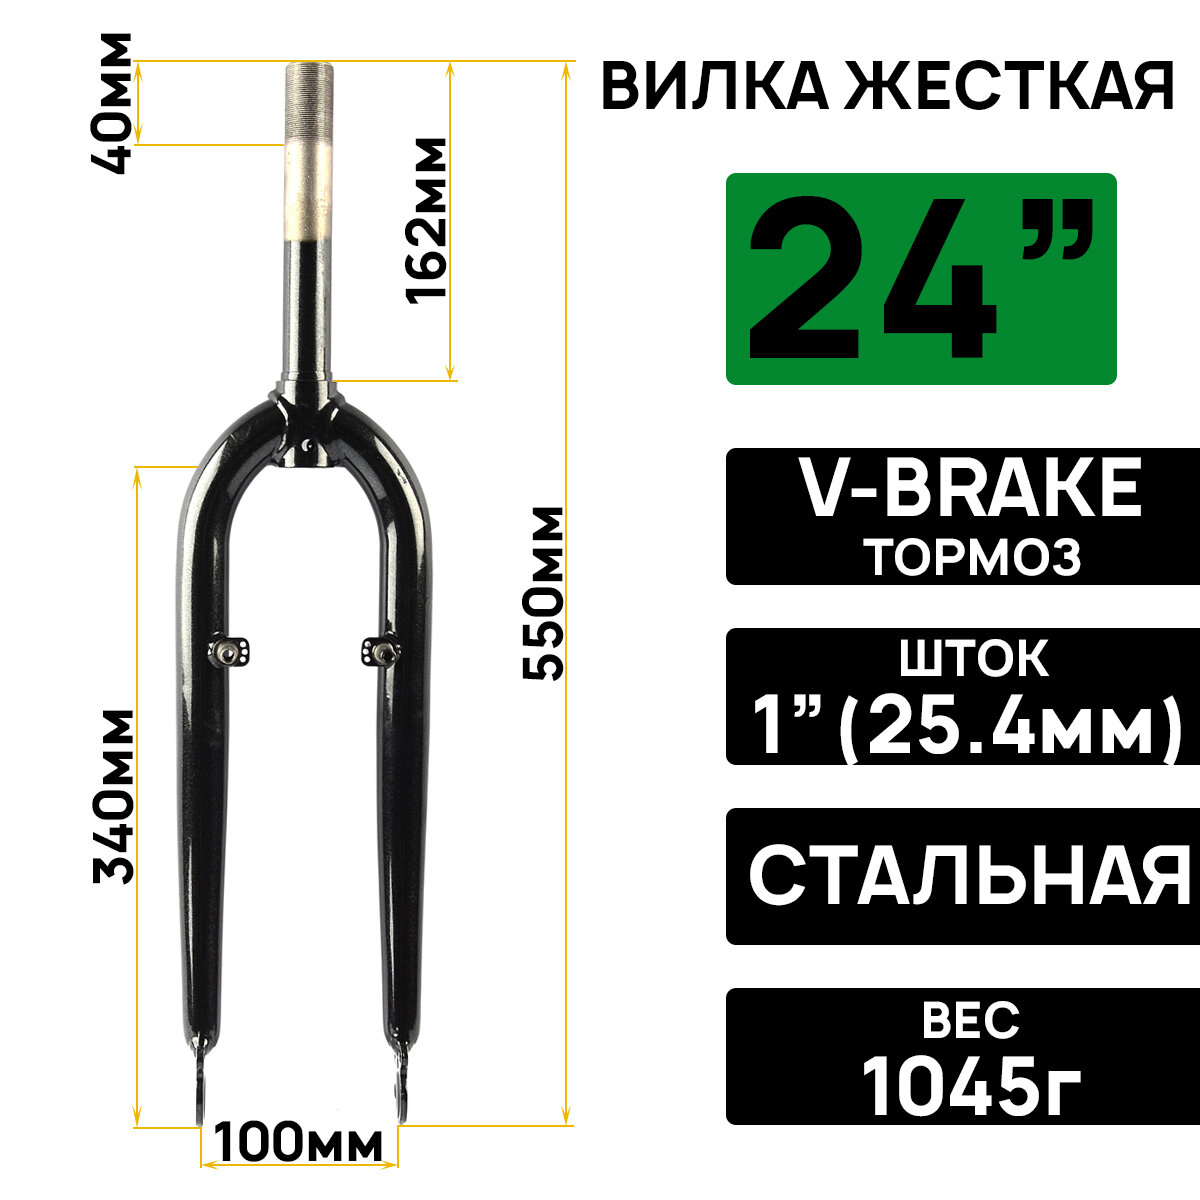 Вилка жесткая ARISTO 24", резьбовой шток 1"х162мм, тормоз V-brake, стальная, для велосипедов типа Pilot 710/720/750, черная